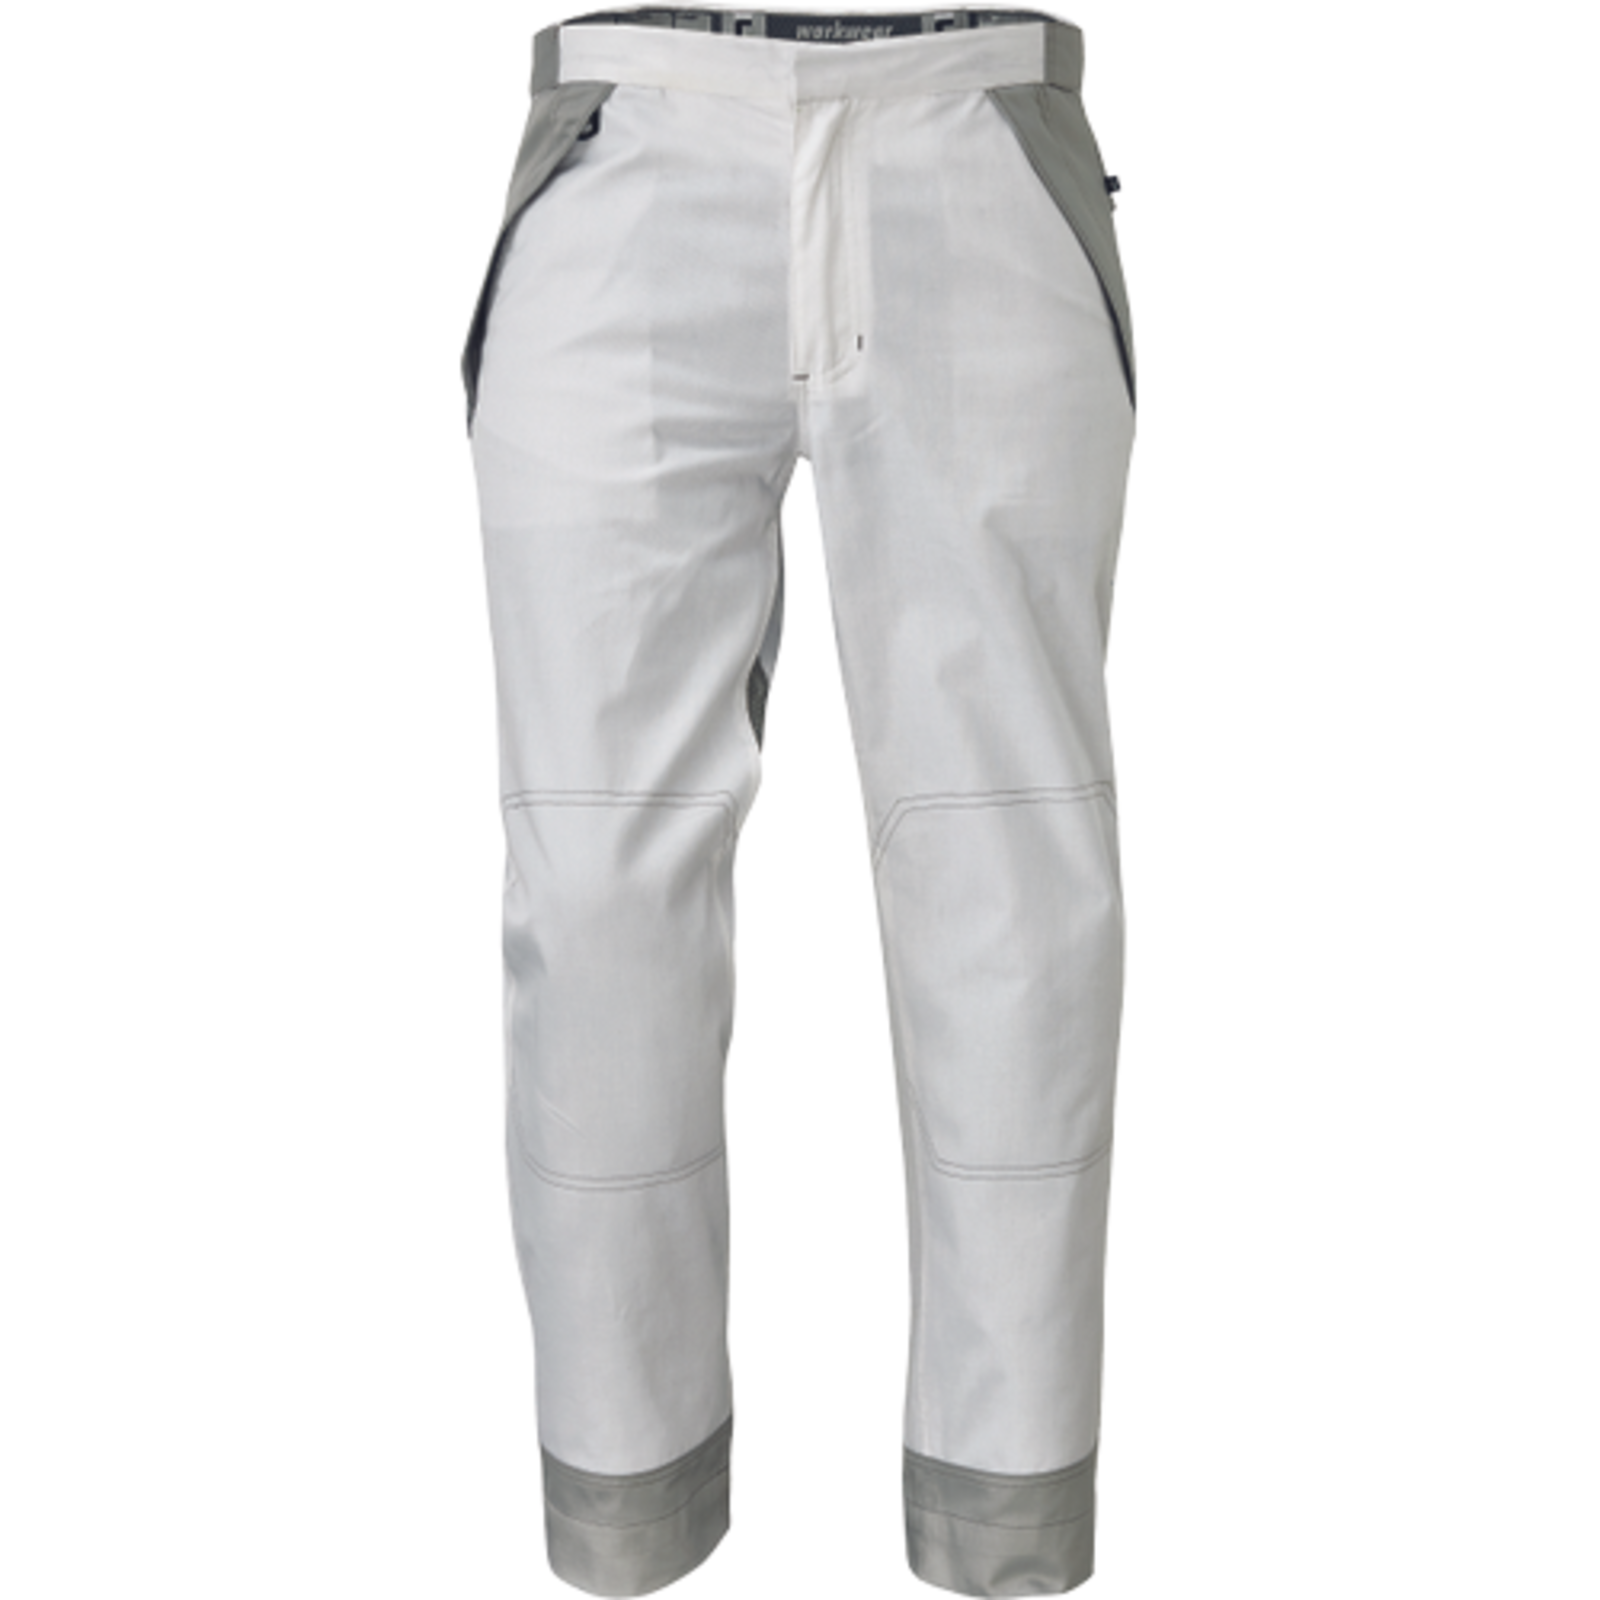 Pánske pracovné nohavice Cerva Montrose  - veľkosť: 52, farba: biela/sivá